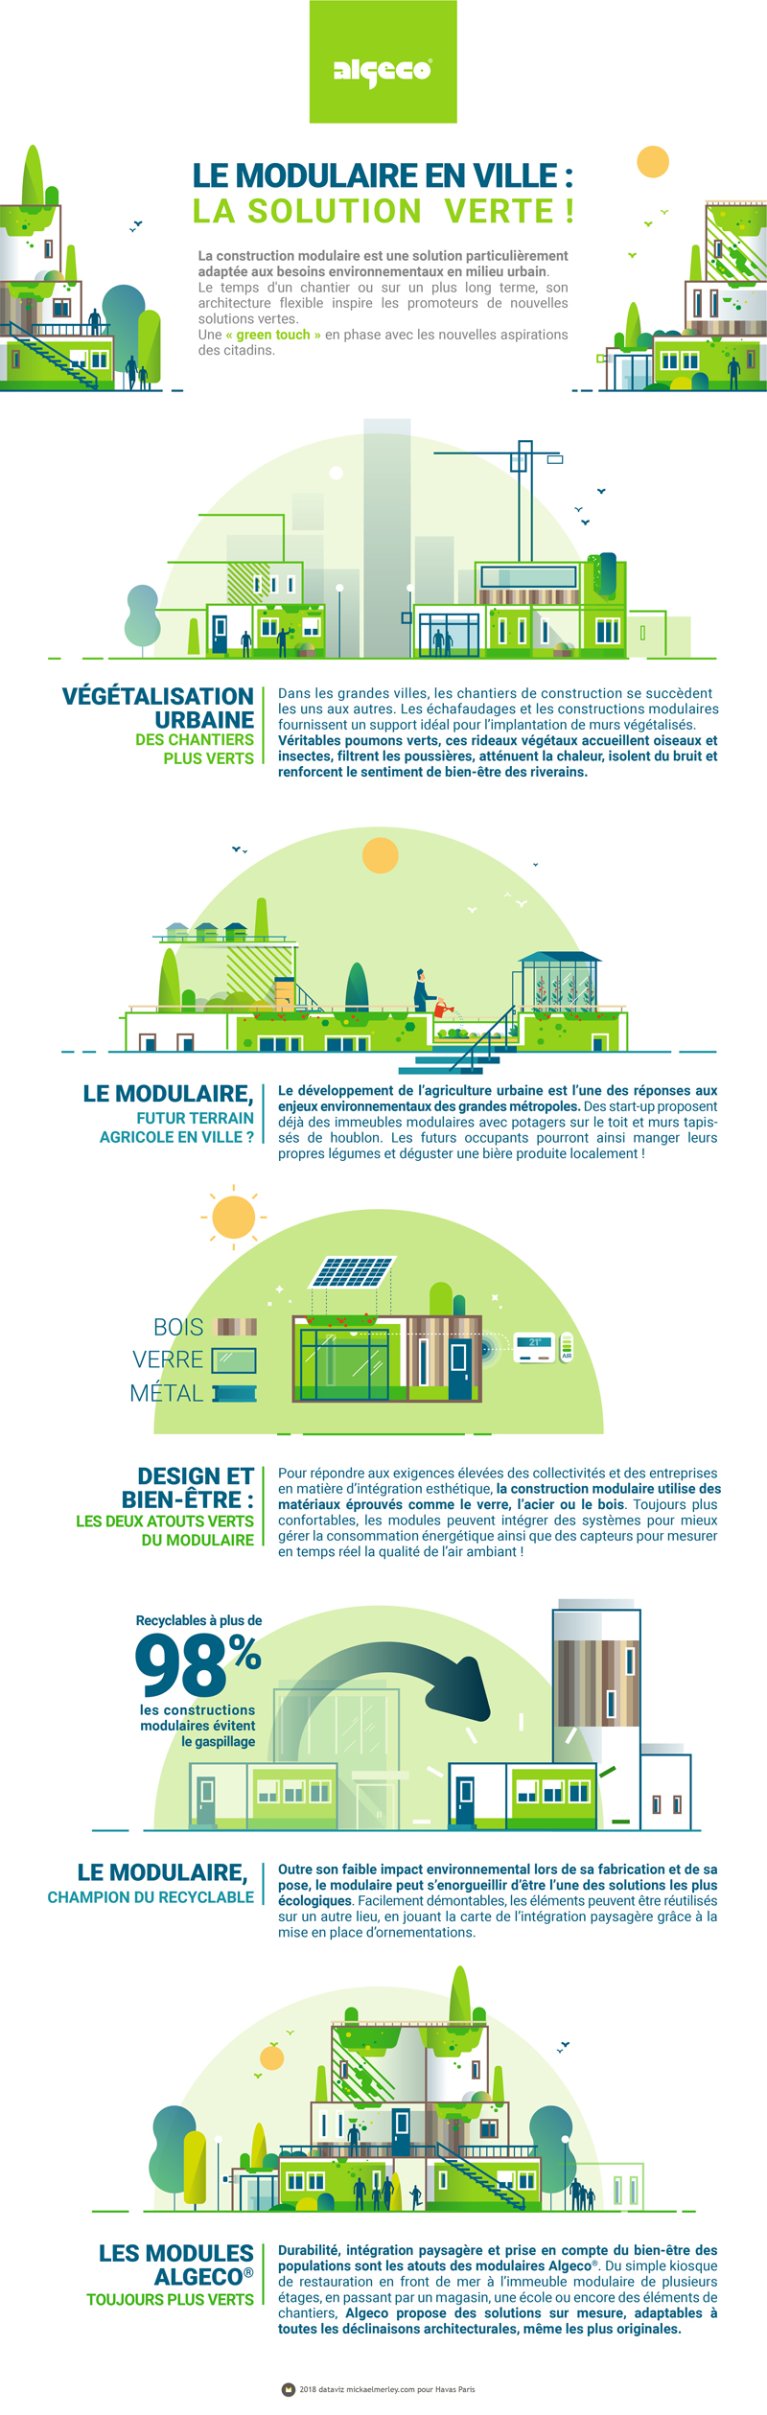 Infographie "le modulaire en ville : la solution verte !"